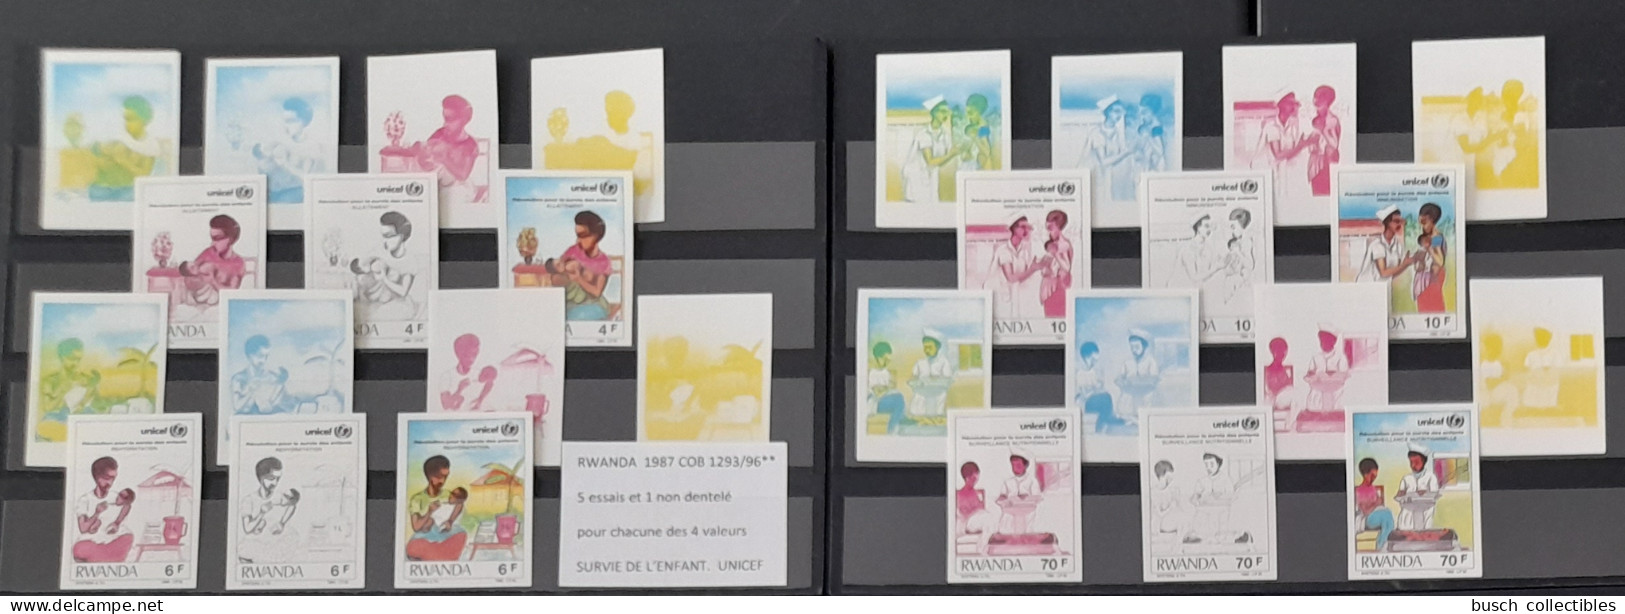 Rwanda 1987 COB 1293 - 1296 Color Proofs Essais Couleur IMPERF ND Révolution Pour Survie De L'Enfant UNICEF Child Kind - Neufs